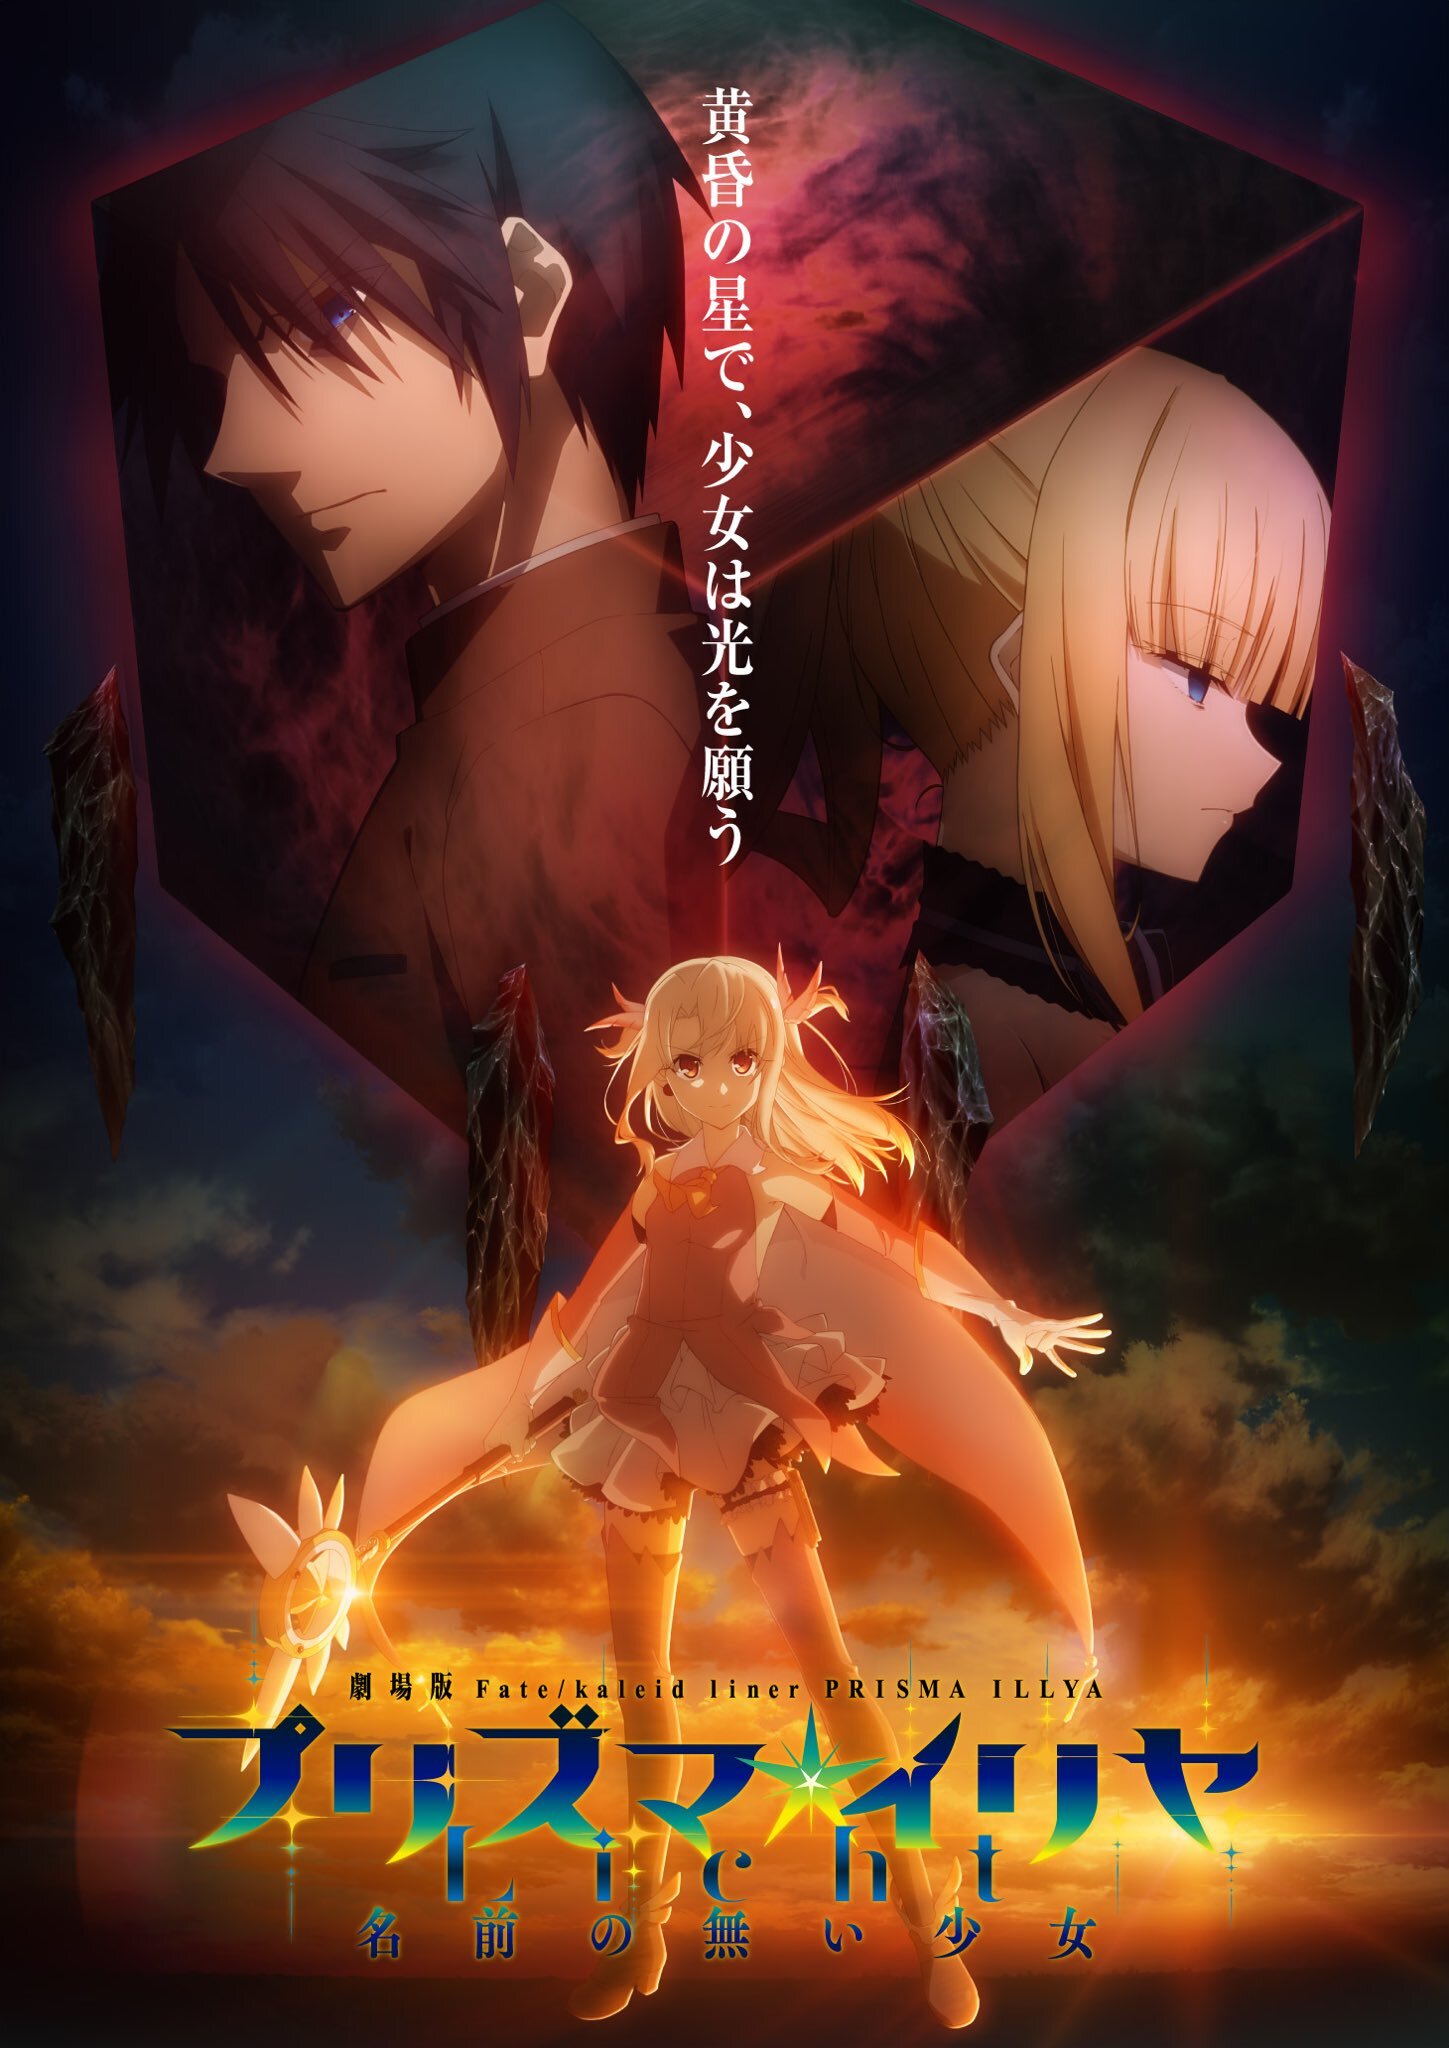 Fate / Kaleid Liner Prisma New Movie enthüllt Titel und Teaser Visual